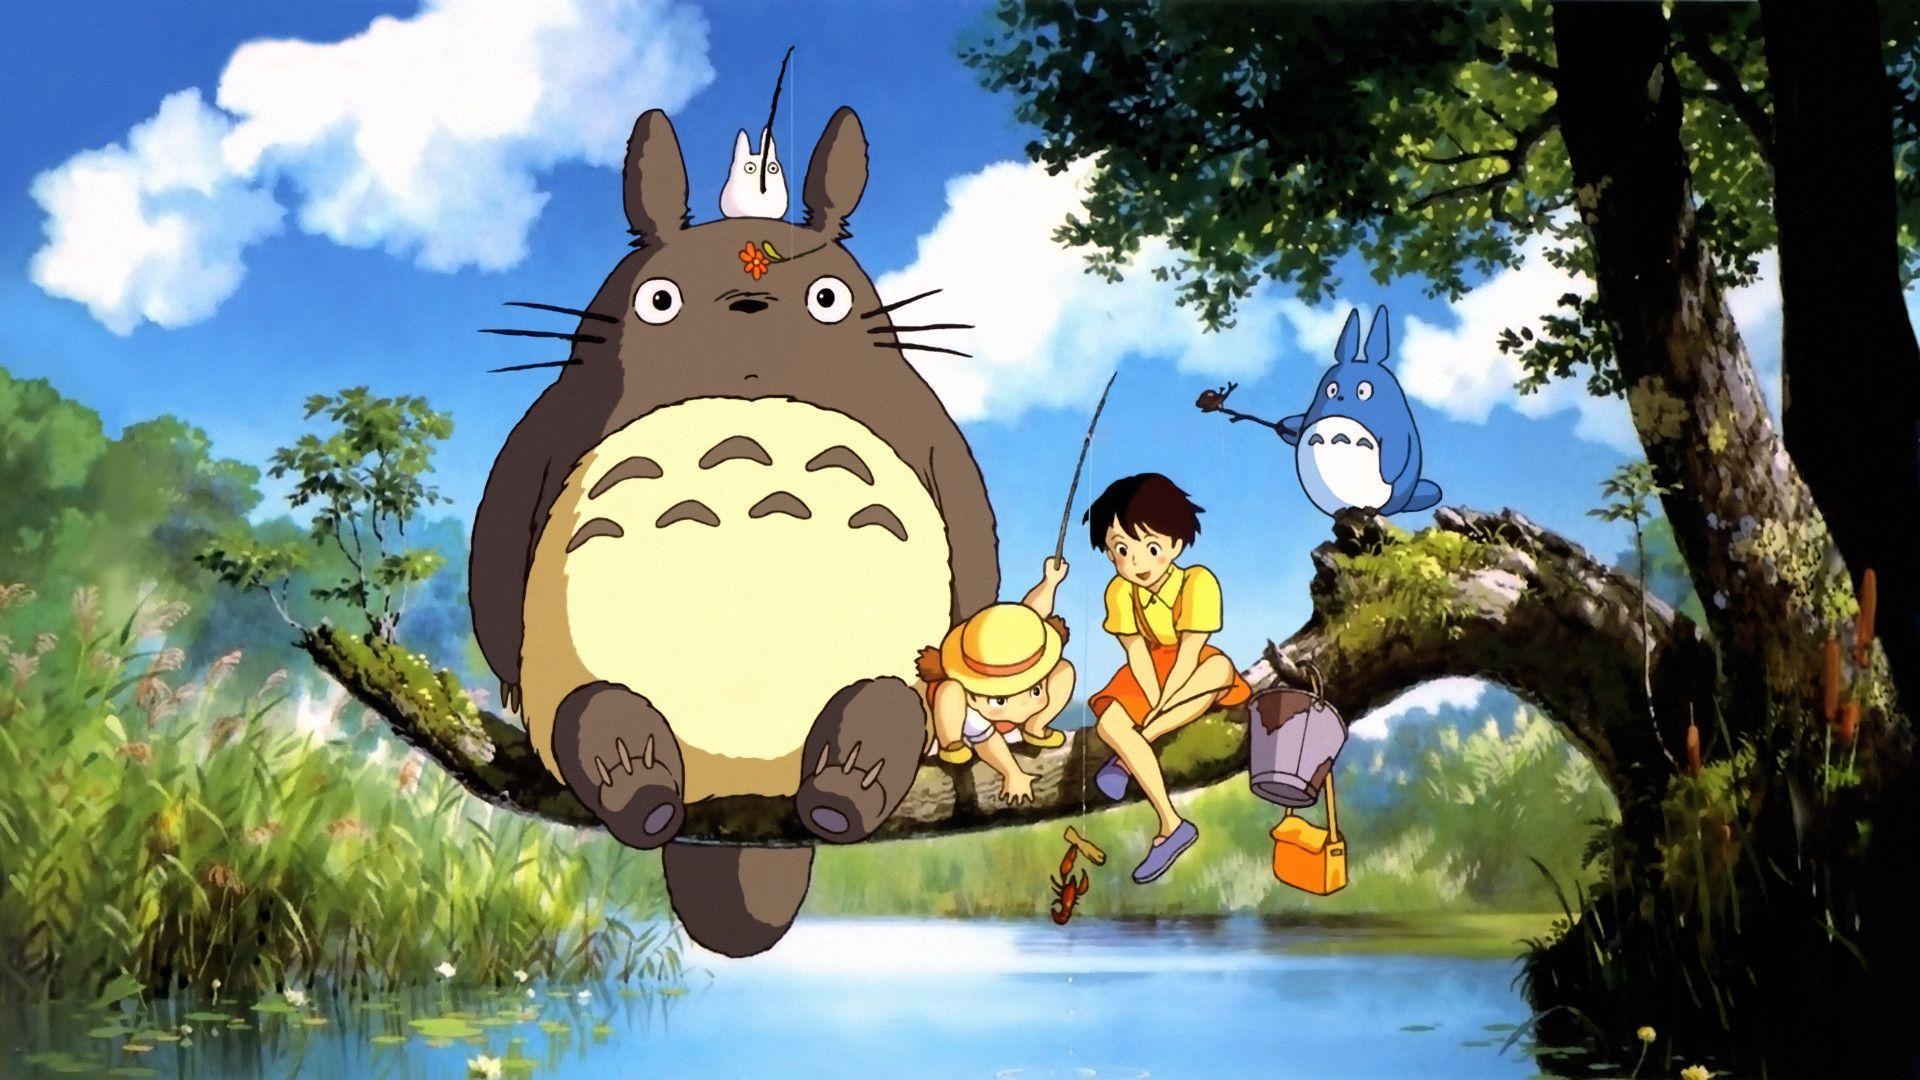 More Like Totoro